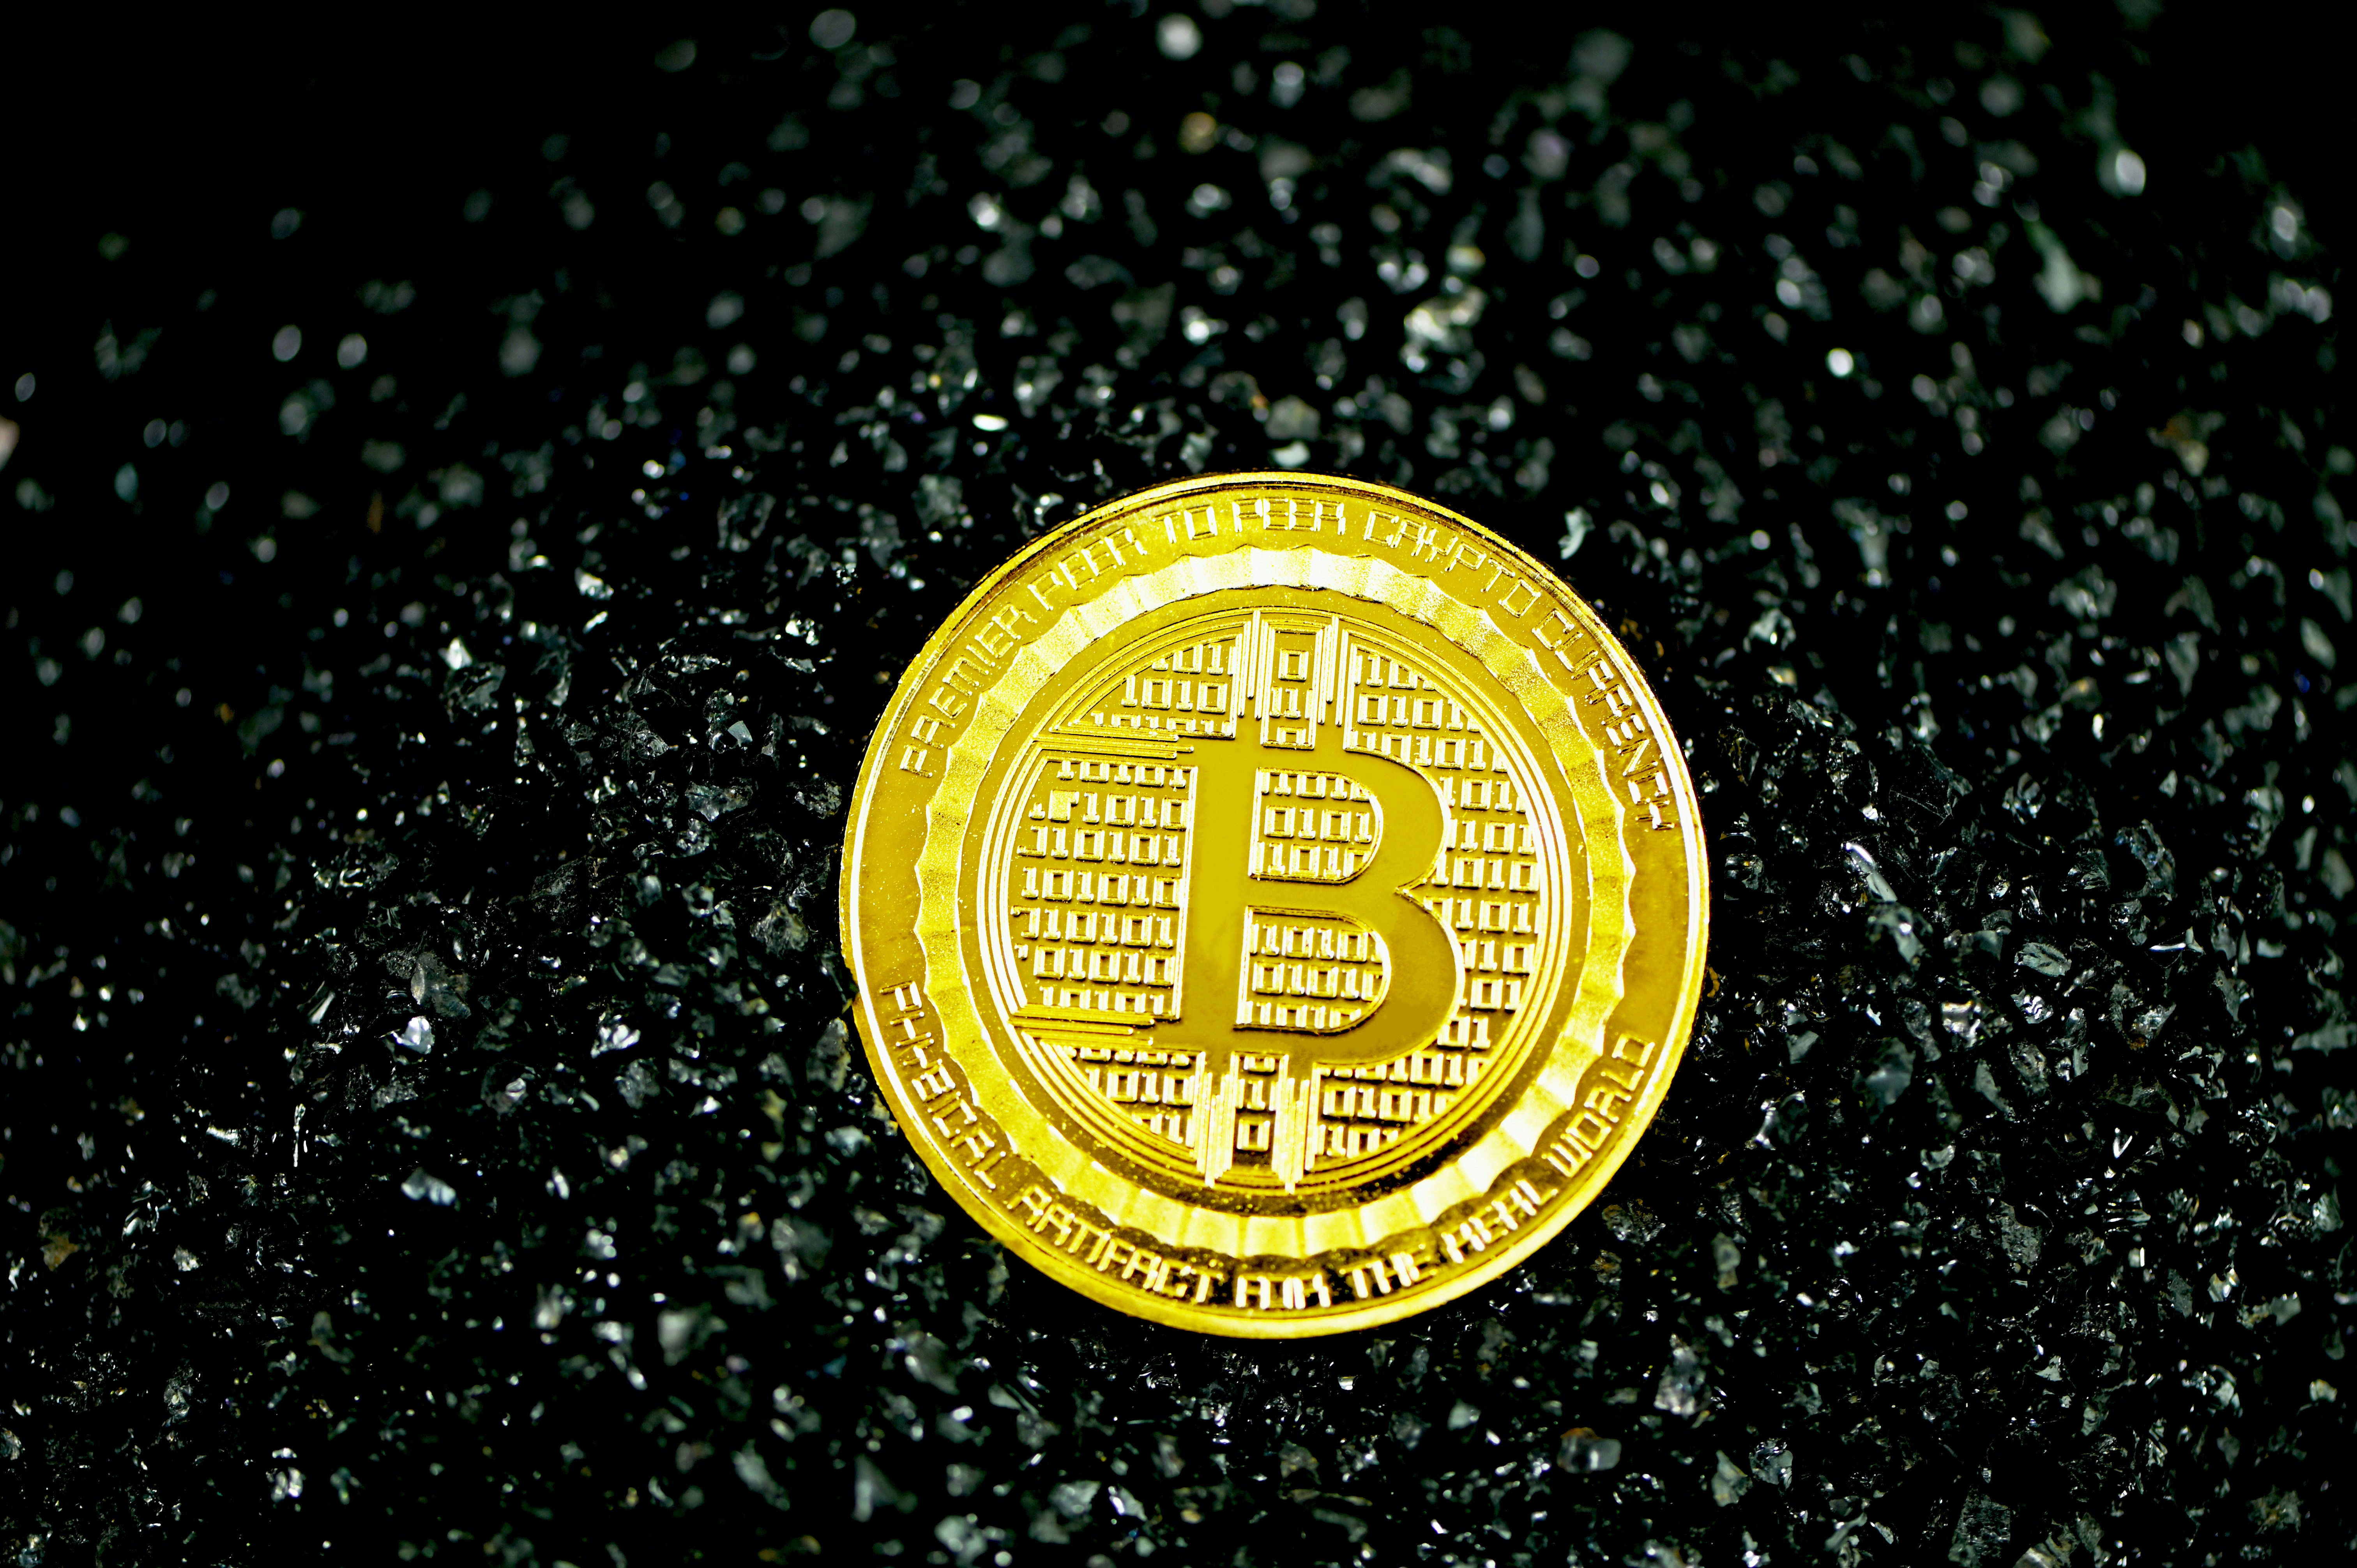 A bitcoin coin on black stones